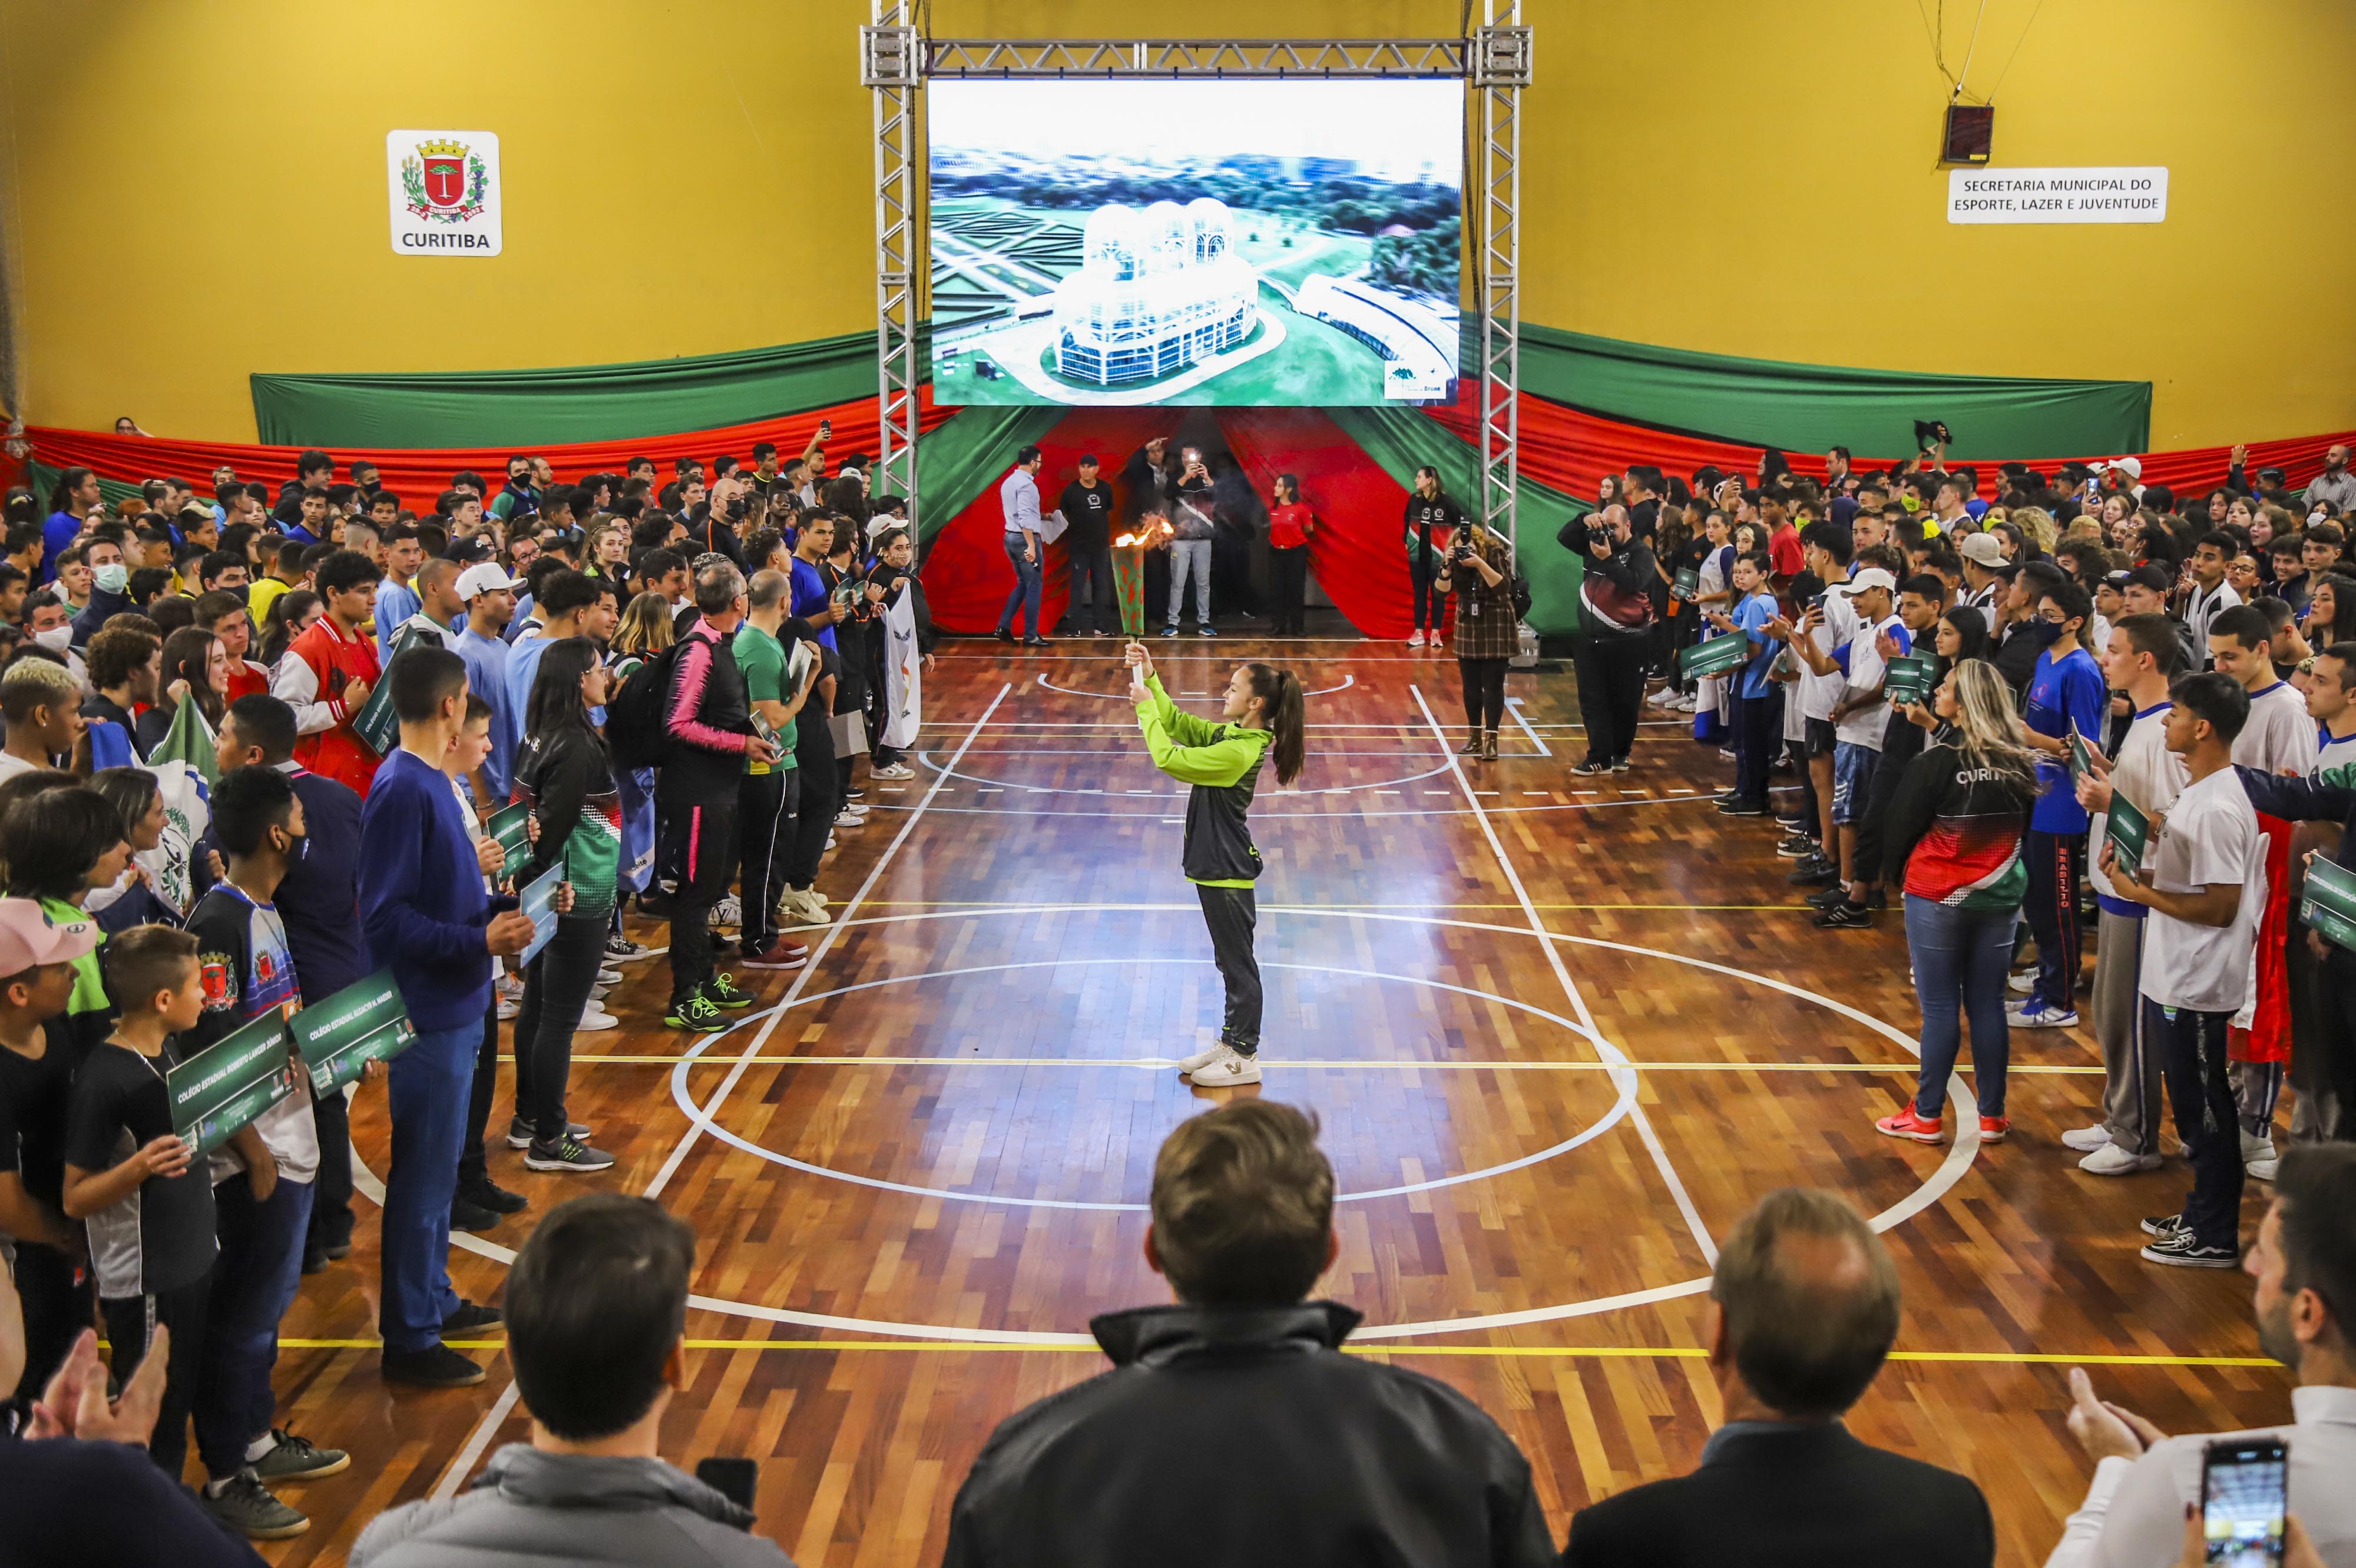 Prefeitura de Curitiba veta a realização de jogos de futebol em